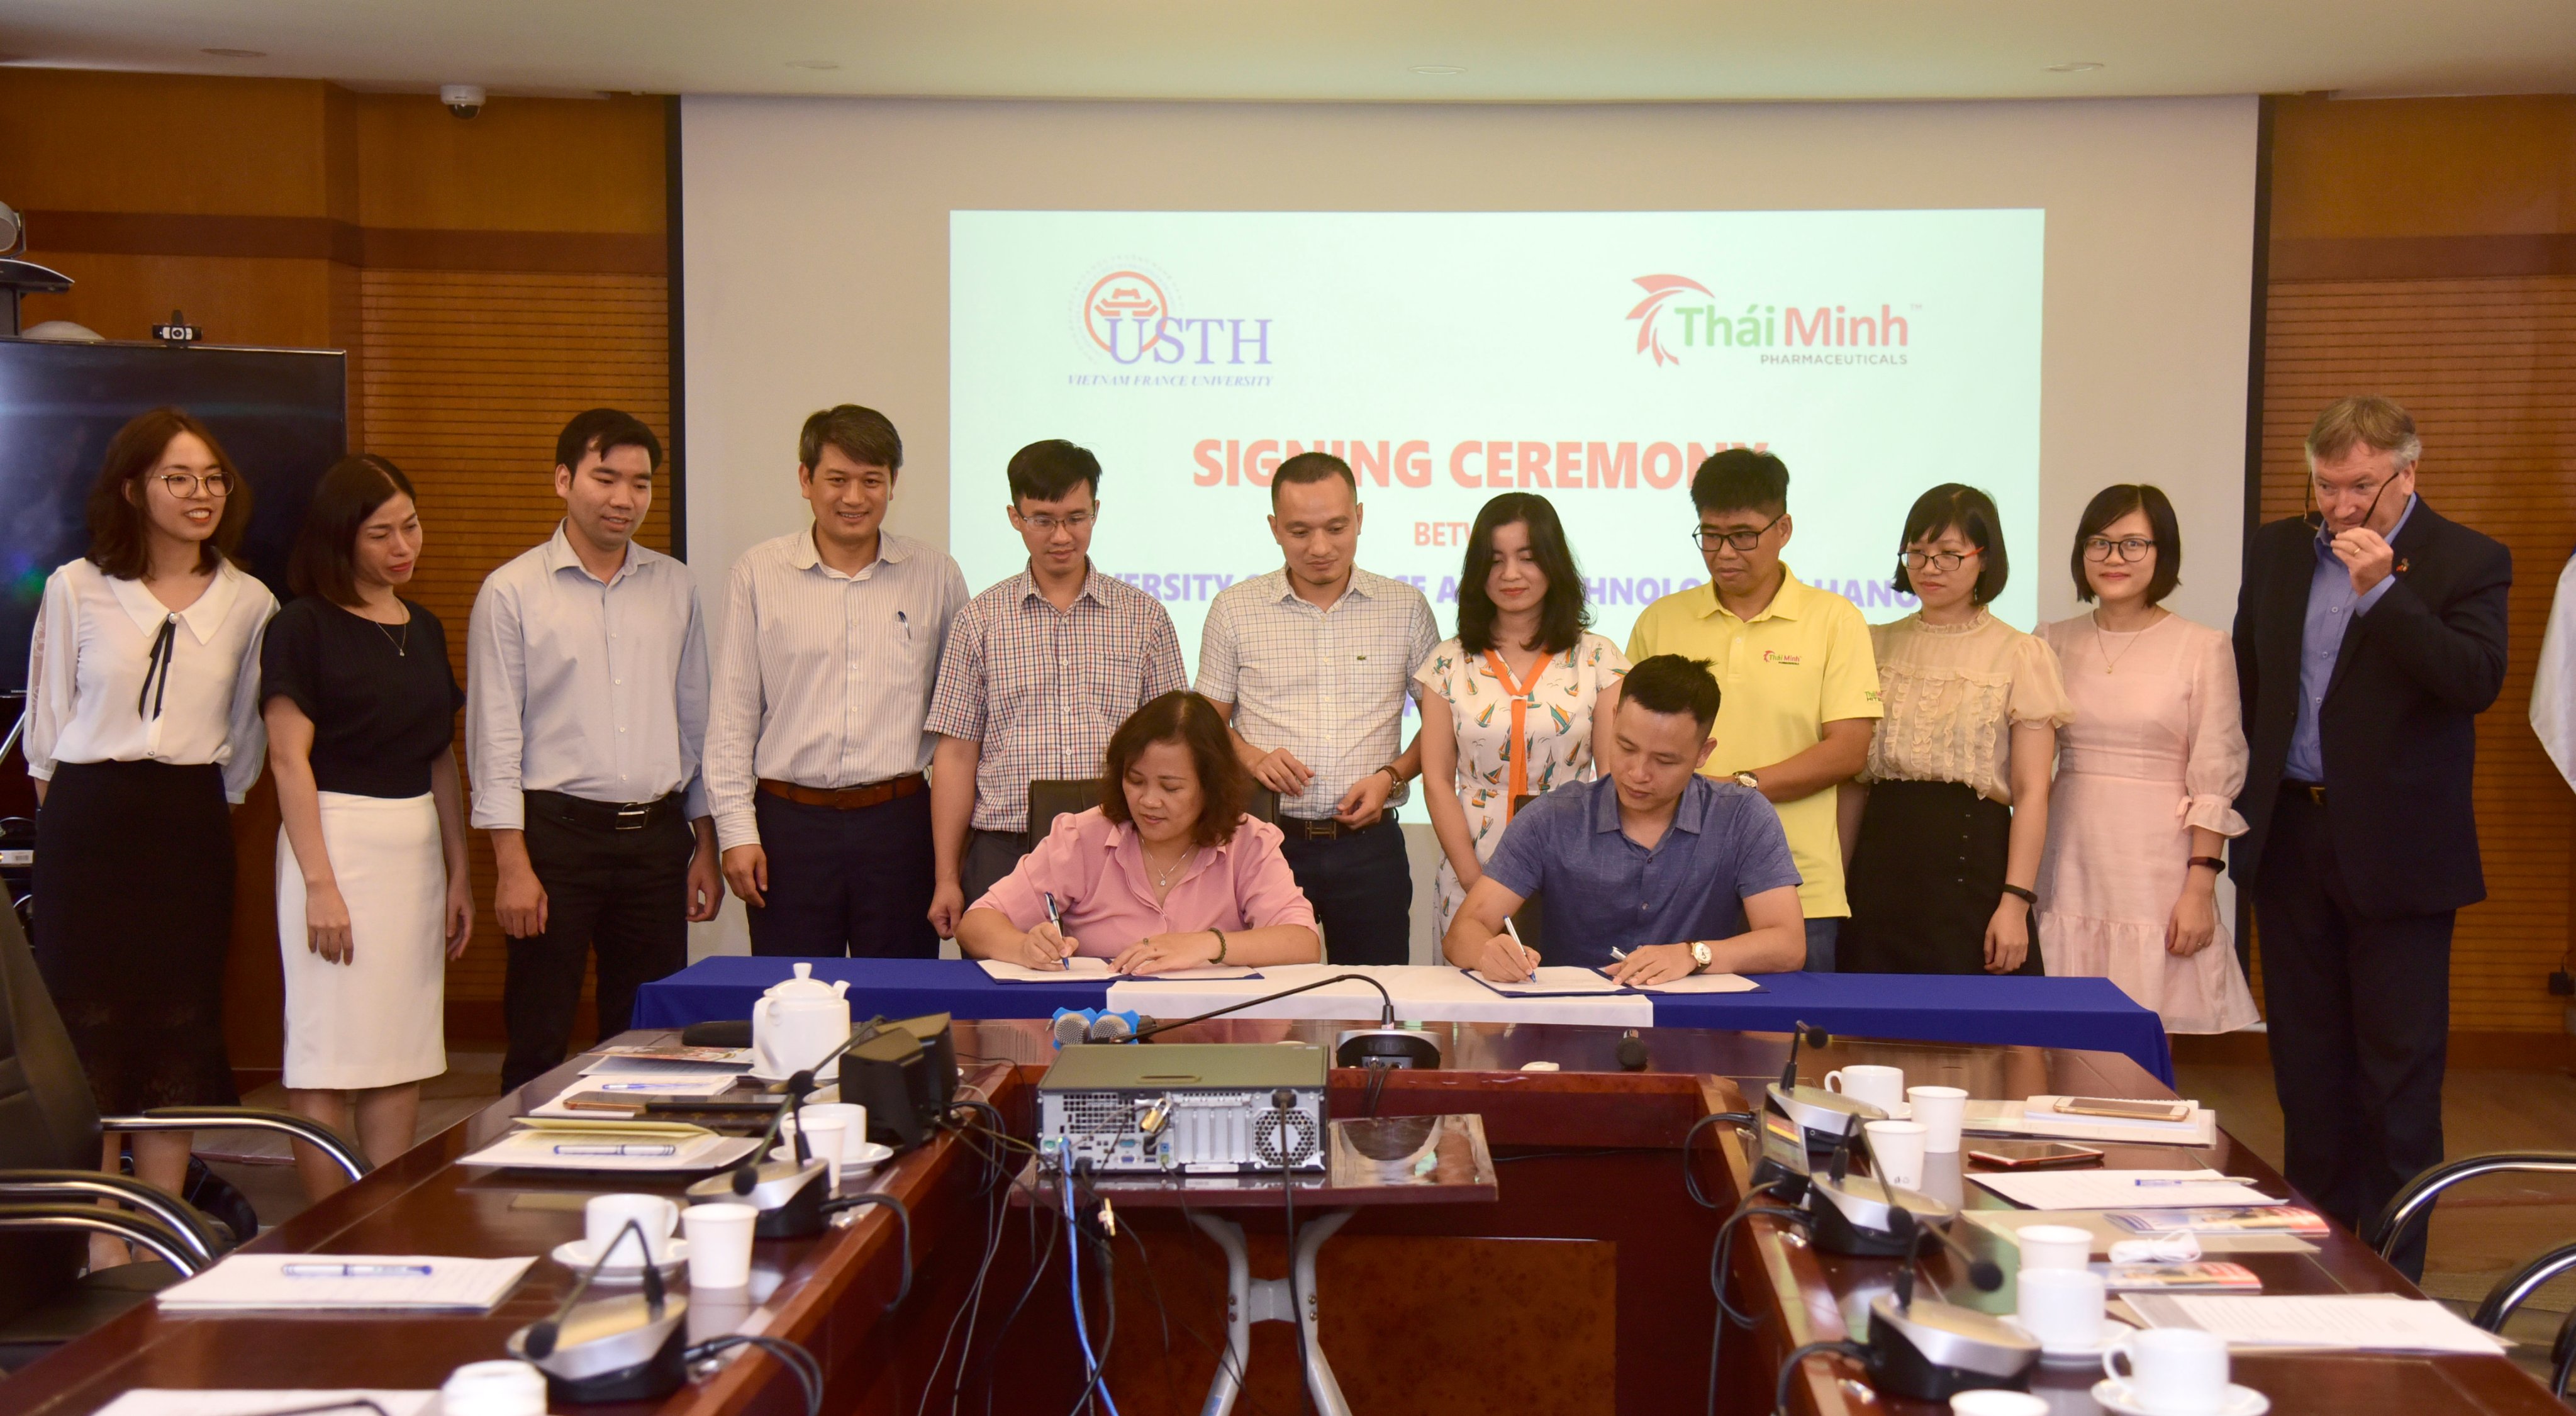 Dược Thái Minh và Đại học Khoa học  Công nghệ Hà Nội (USTH) ký kết biên bản ghi nhớ